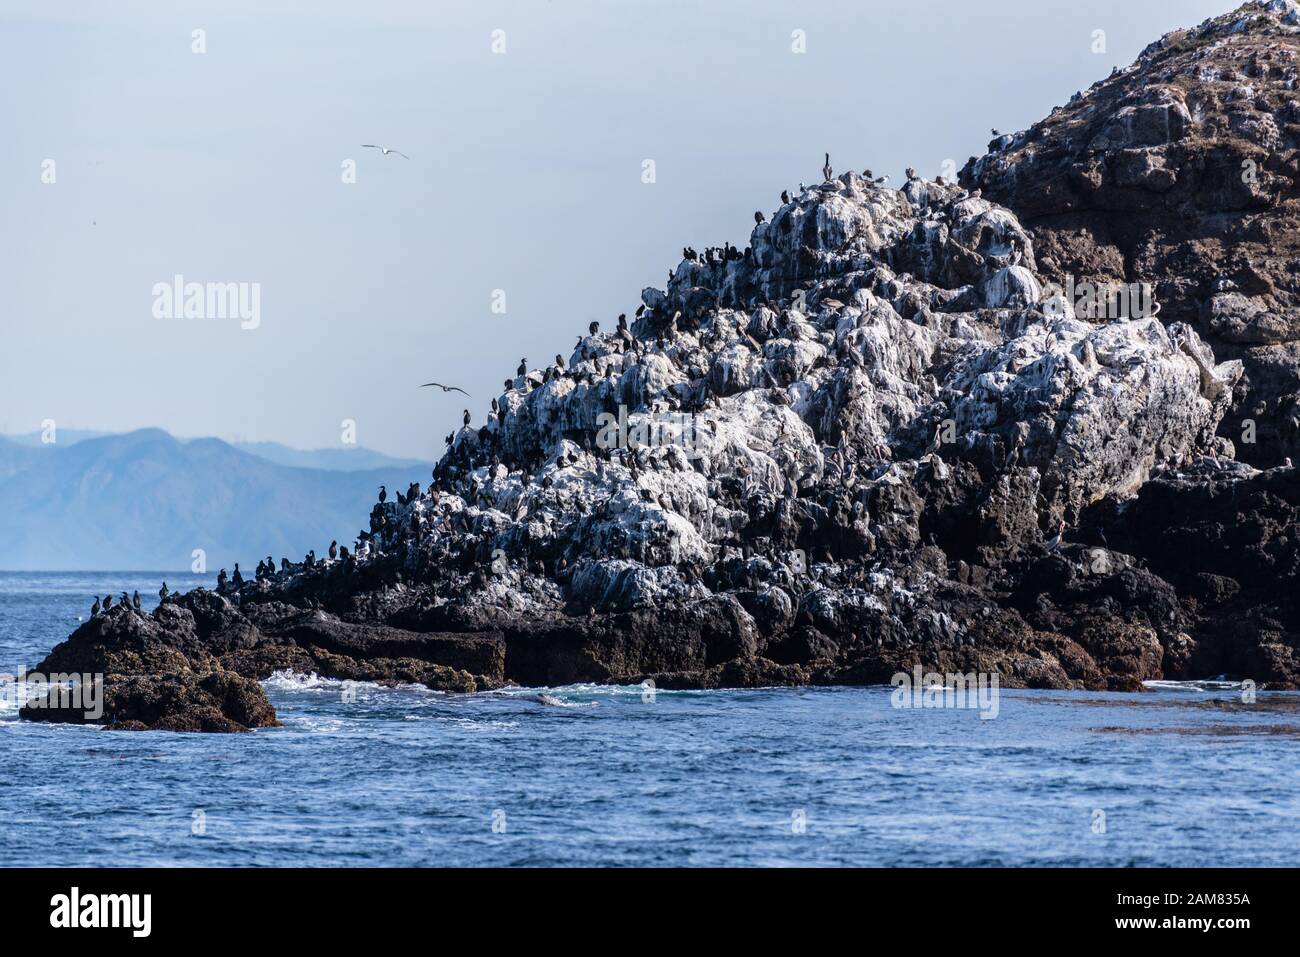 Anakapa Island, vor der Küste Südkaliforniens, hat eine große Population von Großen Cormorant-Vögeln, die auf dem vulkanischen Felsen am Westende von isl brüten Stockfoto